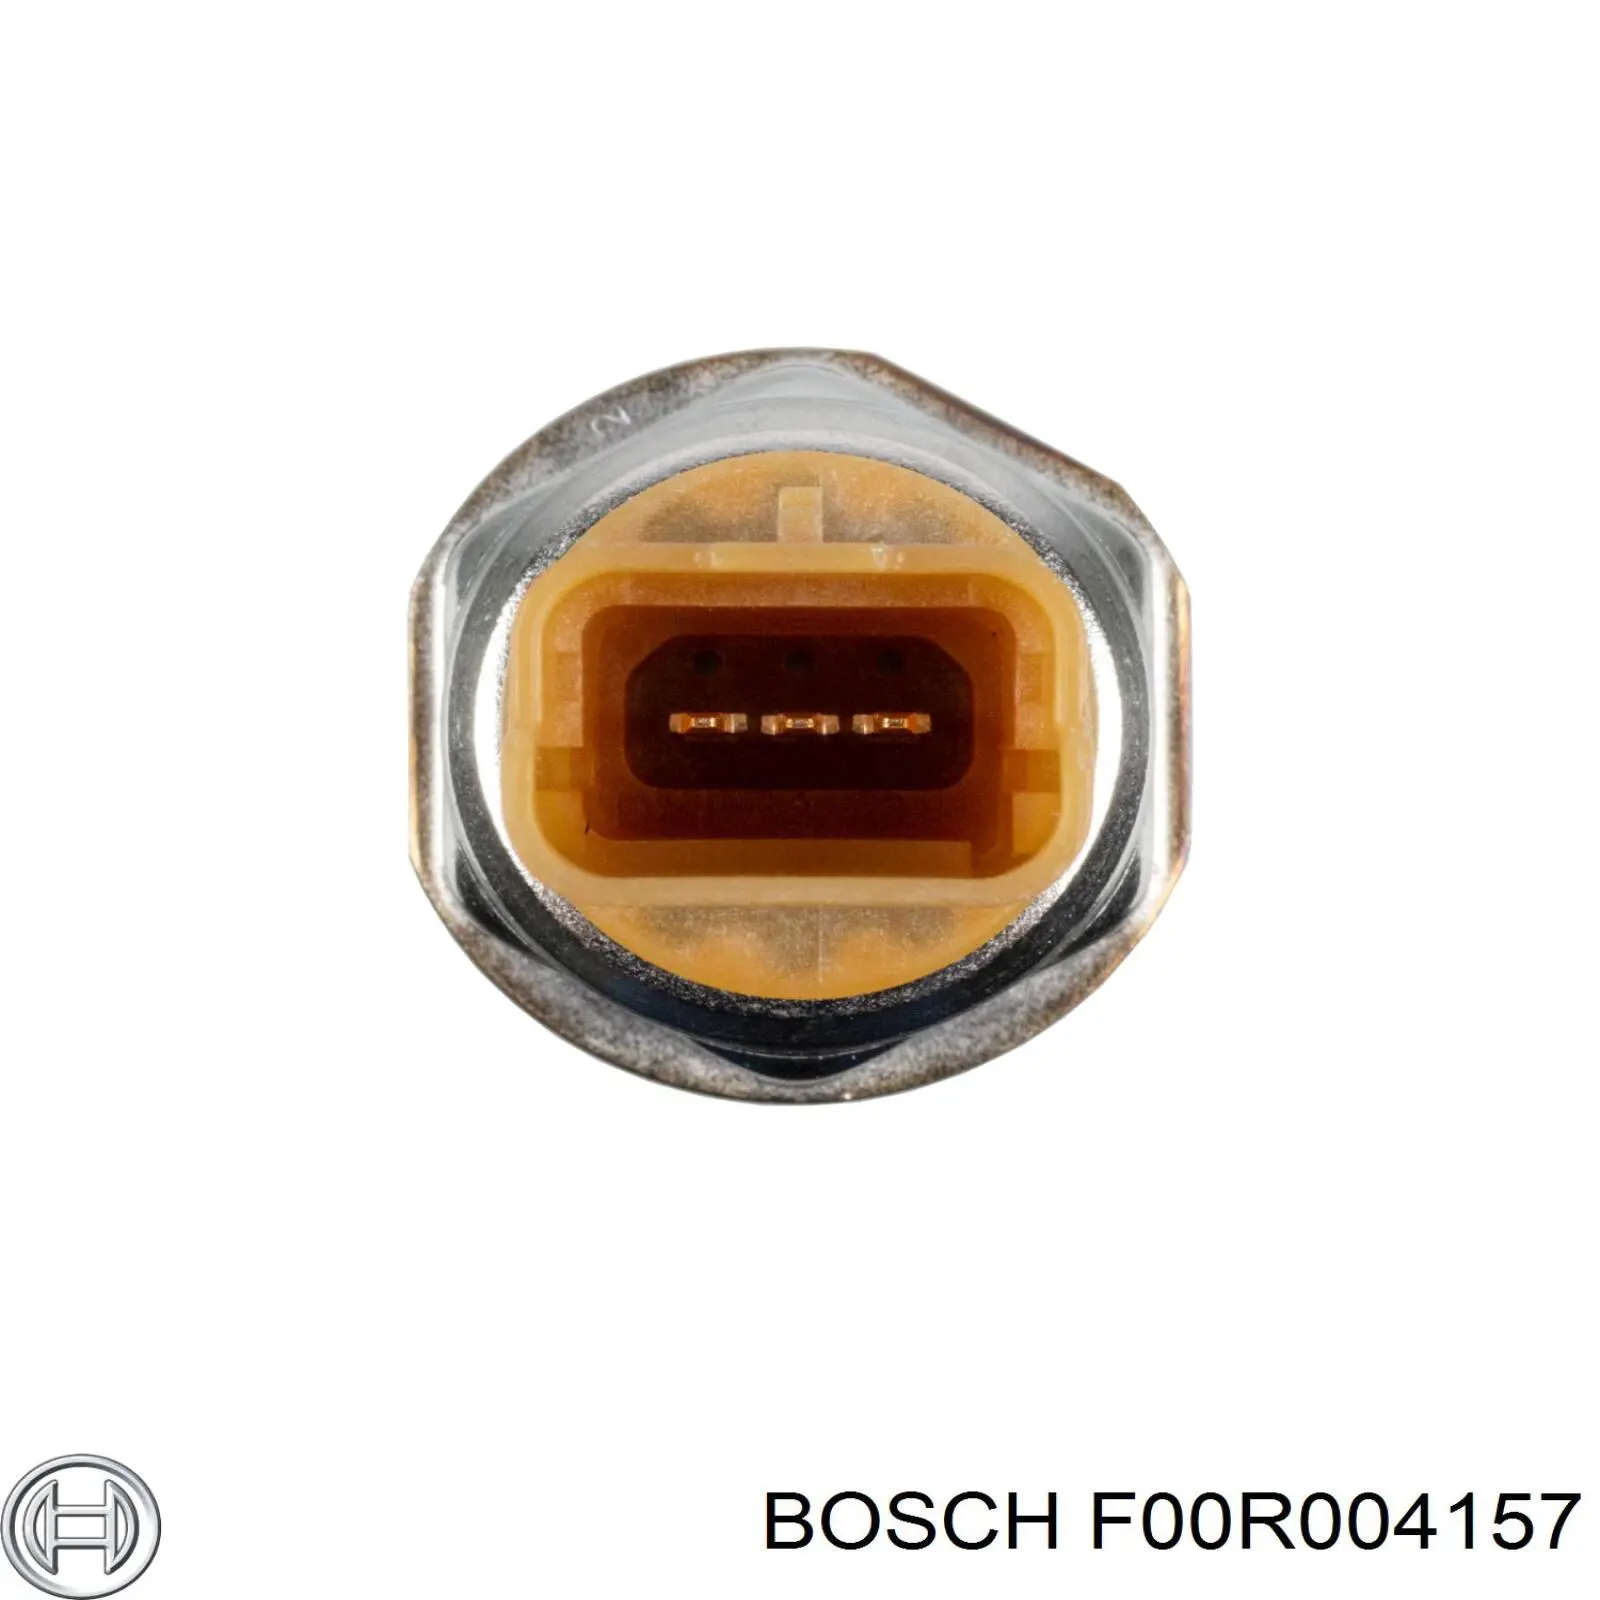 Sensor de presión de combustible F00R004157 Bosch